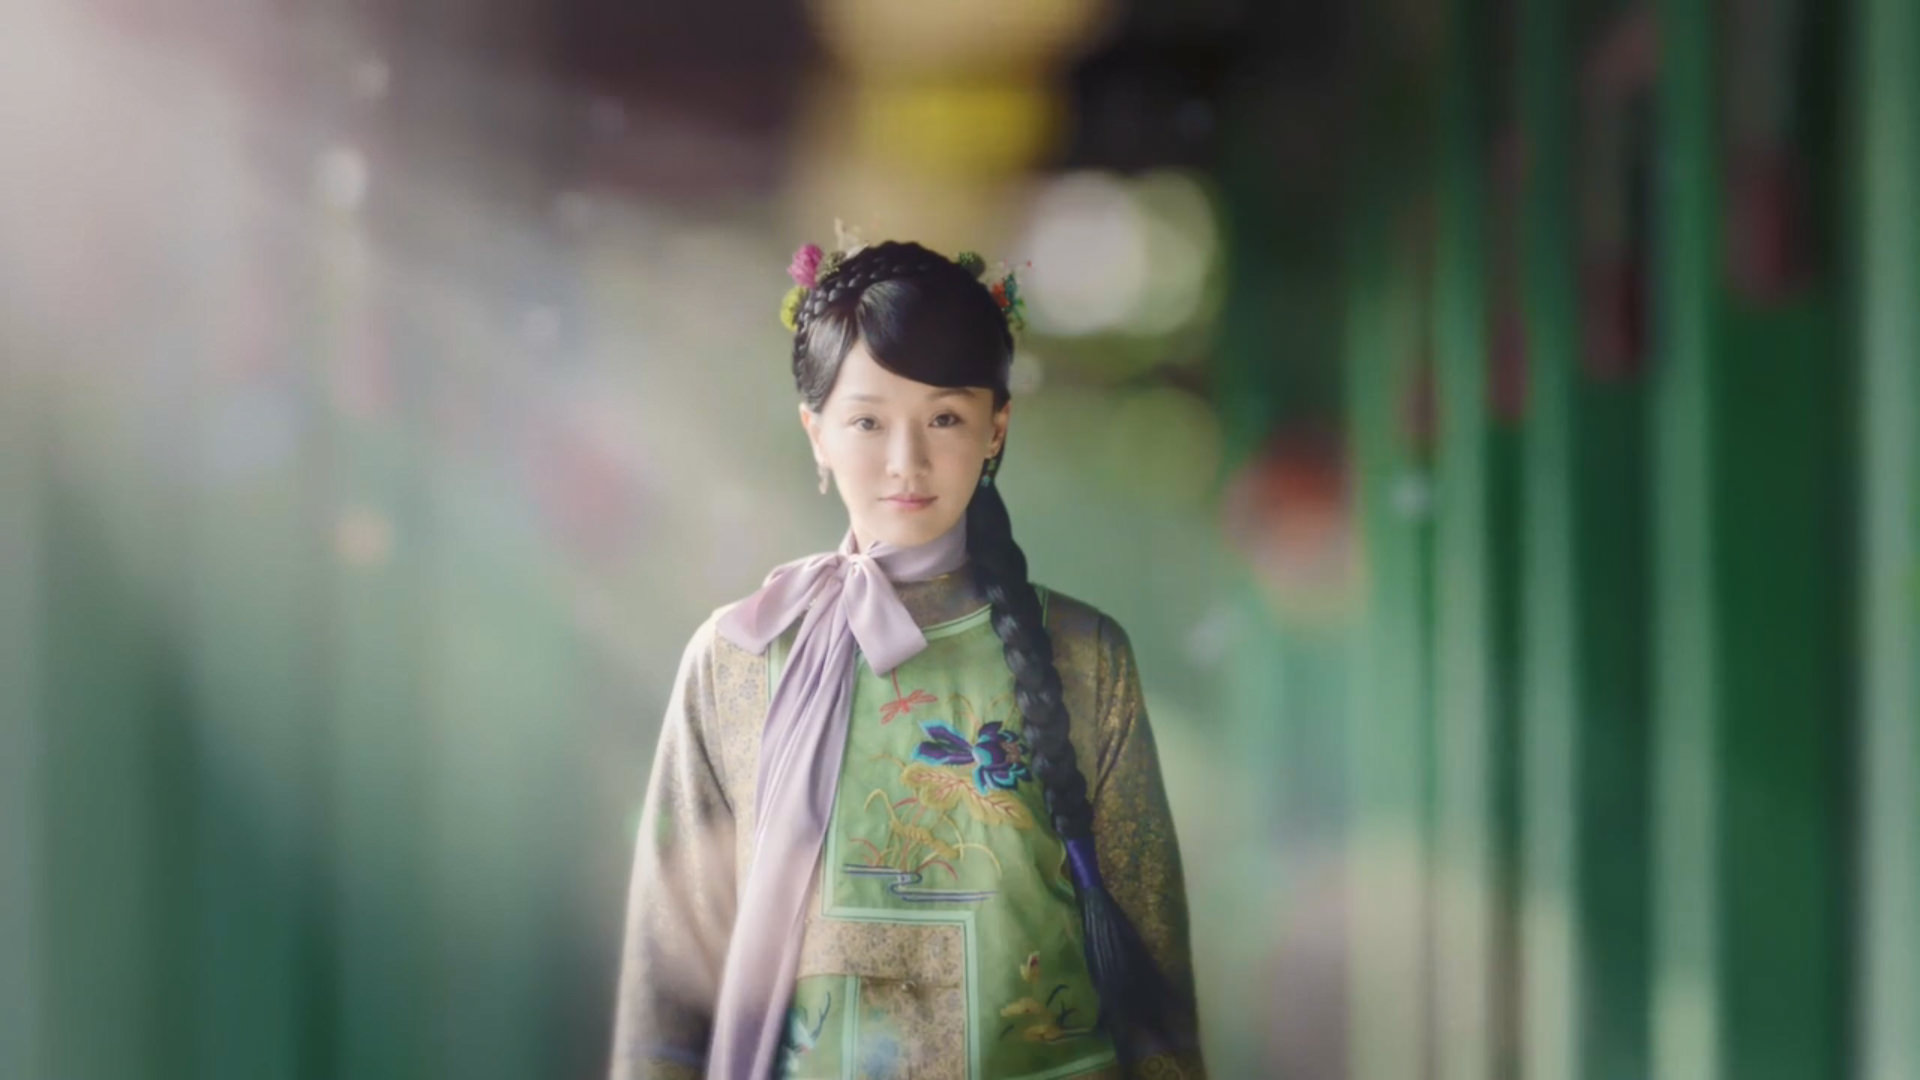 Tạo hình thiếu nữ tuổi 17 của Châu Tấn trong bộ phim 'Như Ý truyện' khiến Châu Tấn nhận về không ít chỉ trích